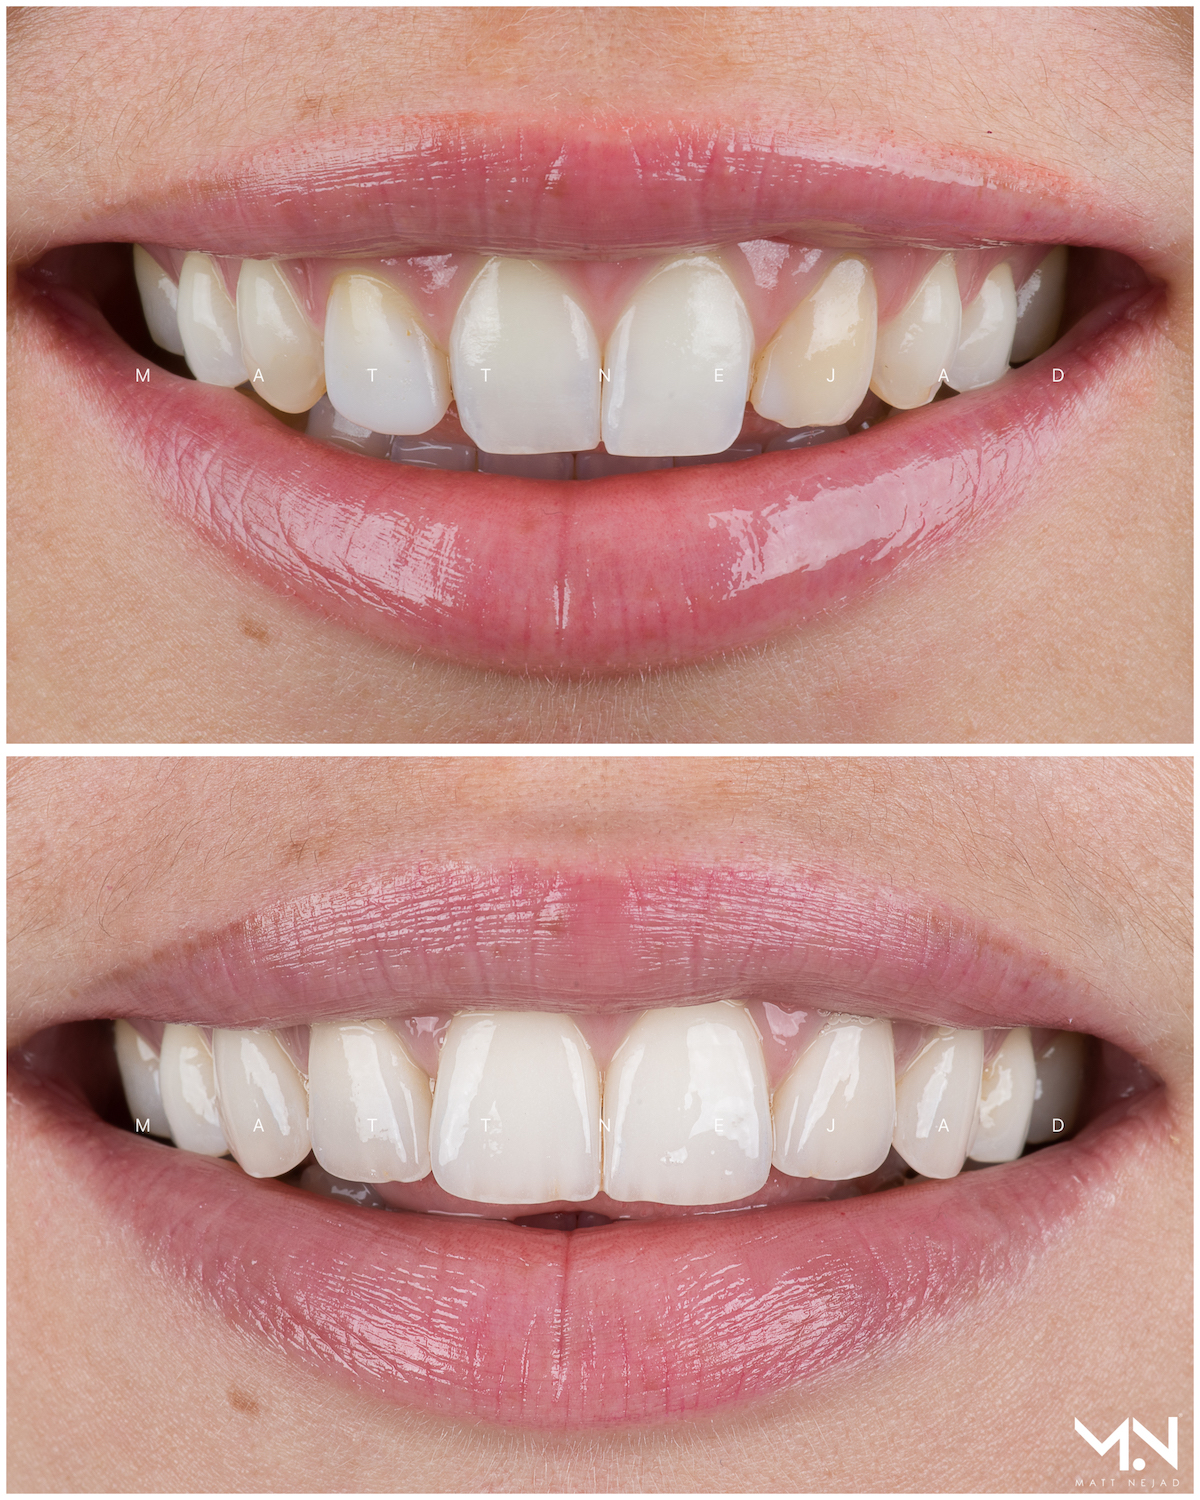 Closeup before & after smile of 6 veneers